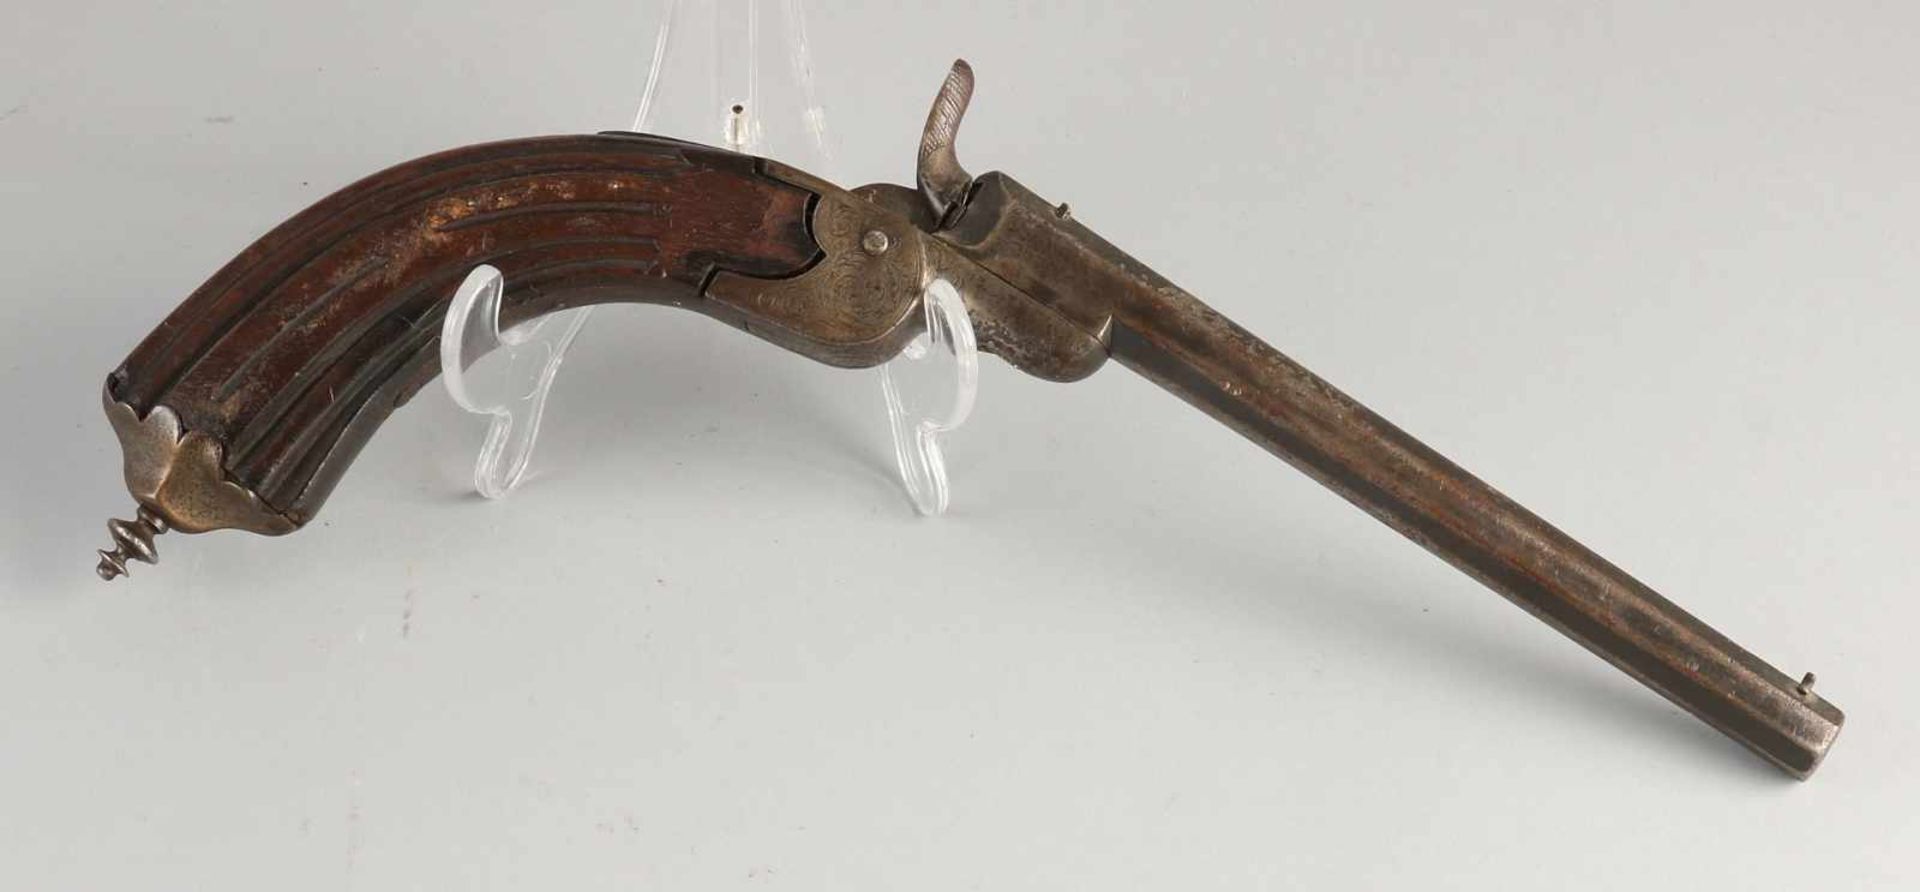 Antike gravierte Waffe mit achteckigem Lauf. Um 1800. Schöne Patina. Größe: L 34 cm. In gutem